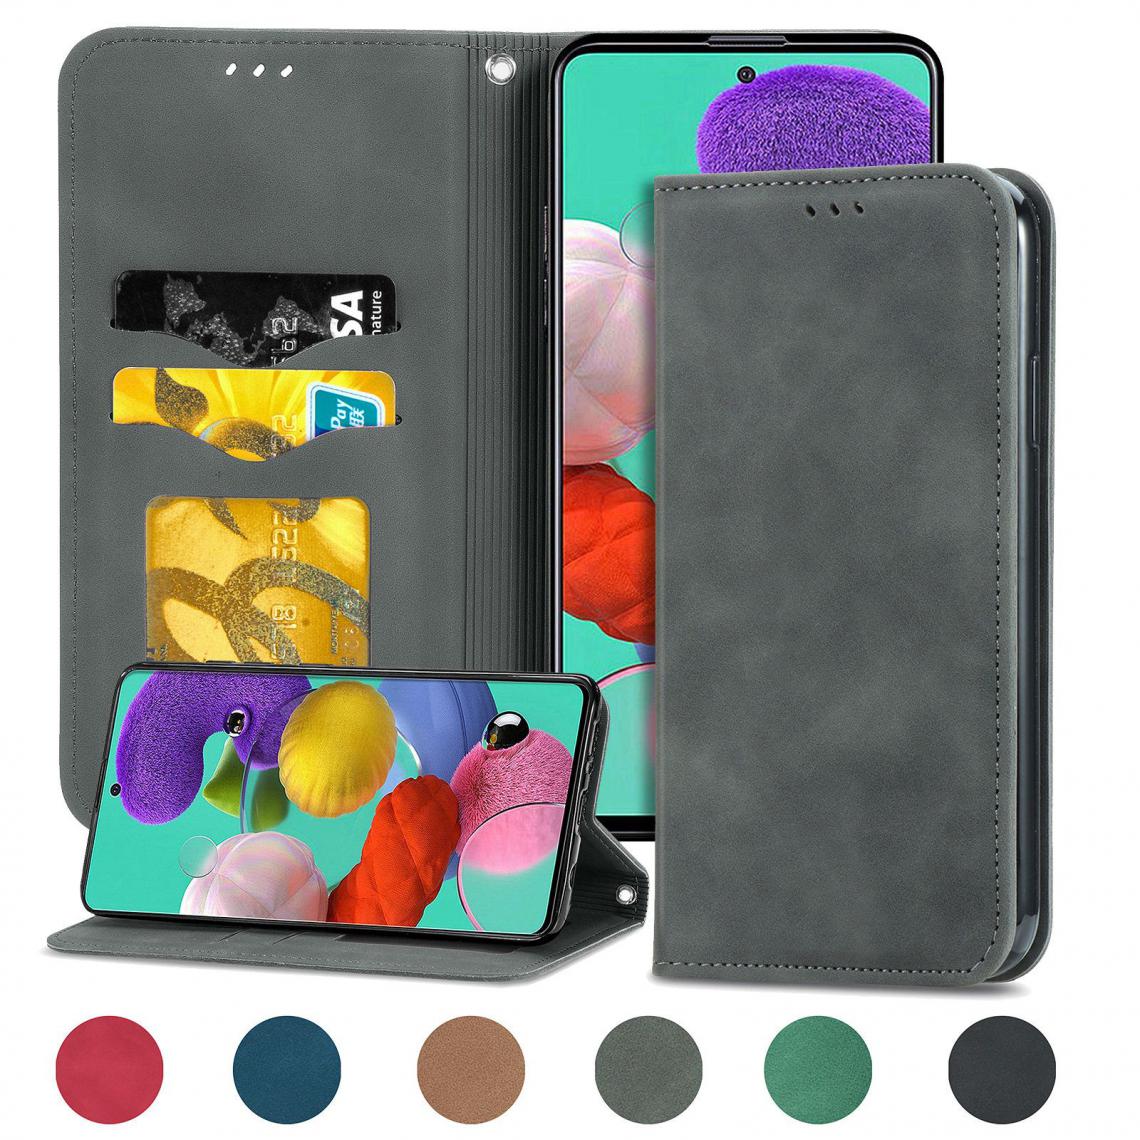 OtterBox - Samsung Galaxy J6 Plus 2018 Housse Etui Coque de protection type portefeuille (support carte de credit) [Gris] - Coque, étui smartphone